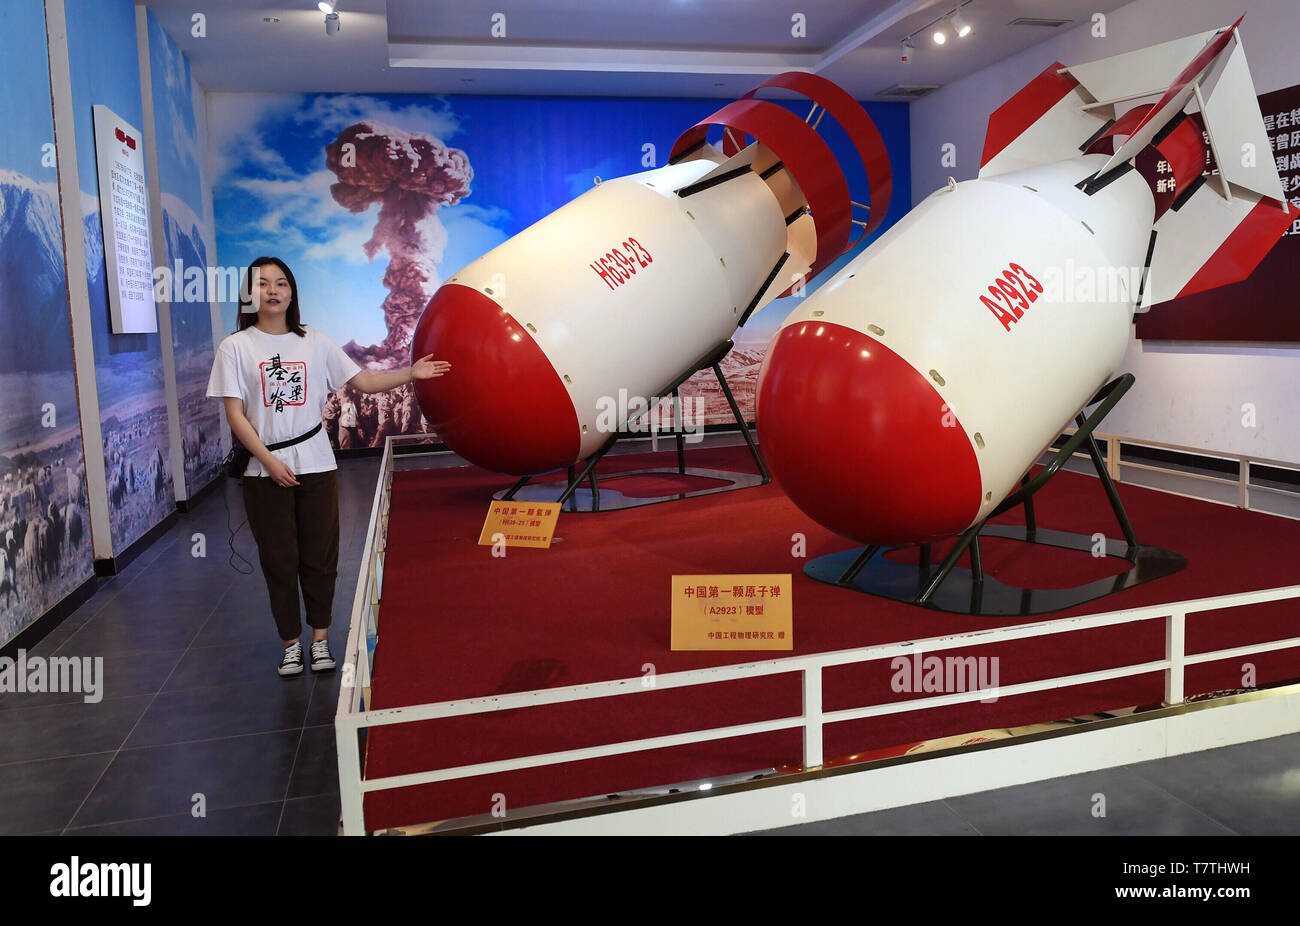 (190509) -- CHENGDU, 9 maggio 2019 (Xinhua) -- Guida Gong Zhaoyi spiega i modelli della Cina la prima bomba atomica (R) e della bomba a idrogeno in una sala per esposizioni in Liangdancheng, il significato della città di bombe nucleari, il sito dove la Cina del primo bombe atomiche e sono state progettate in Zitong contea di Mianyang, nel sud-ovest della Cina di provincia di Sichuan, 23 aprile 2019. Zitong era sede del quartier generale di ricerca della Cina al programma di armi nucleari, dove una dozzina di world-class gli scienziati hanno lavorato per oltre un decennio in Cina il primo atomica e idrogeno bombe e lanci di satelliti negli anni sessanta e settanta. Foto Stock